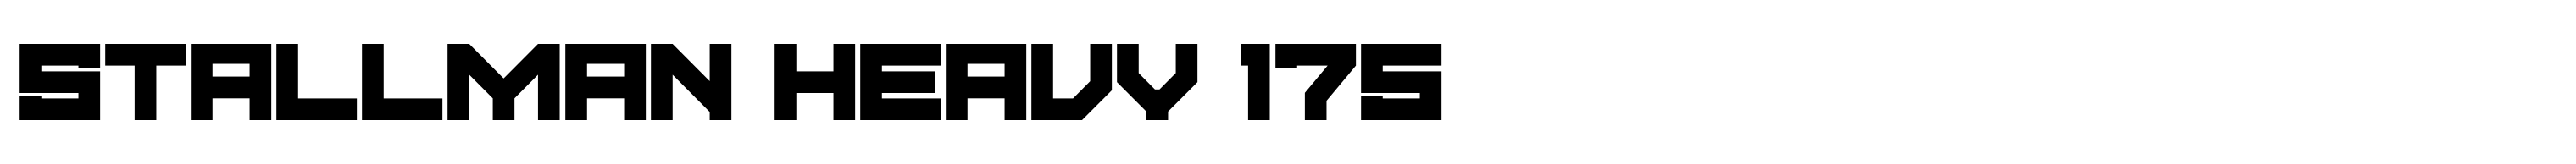 Stallman Heavy 175